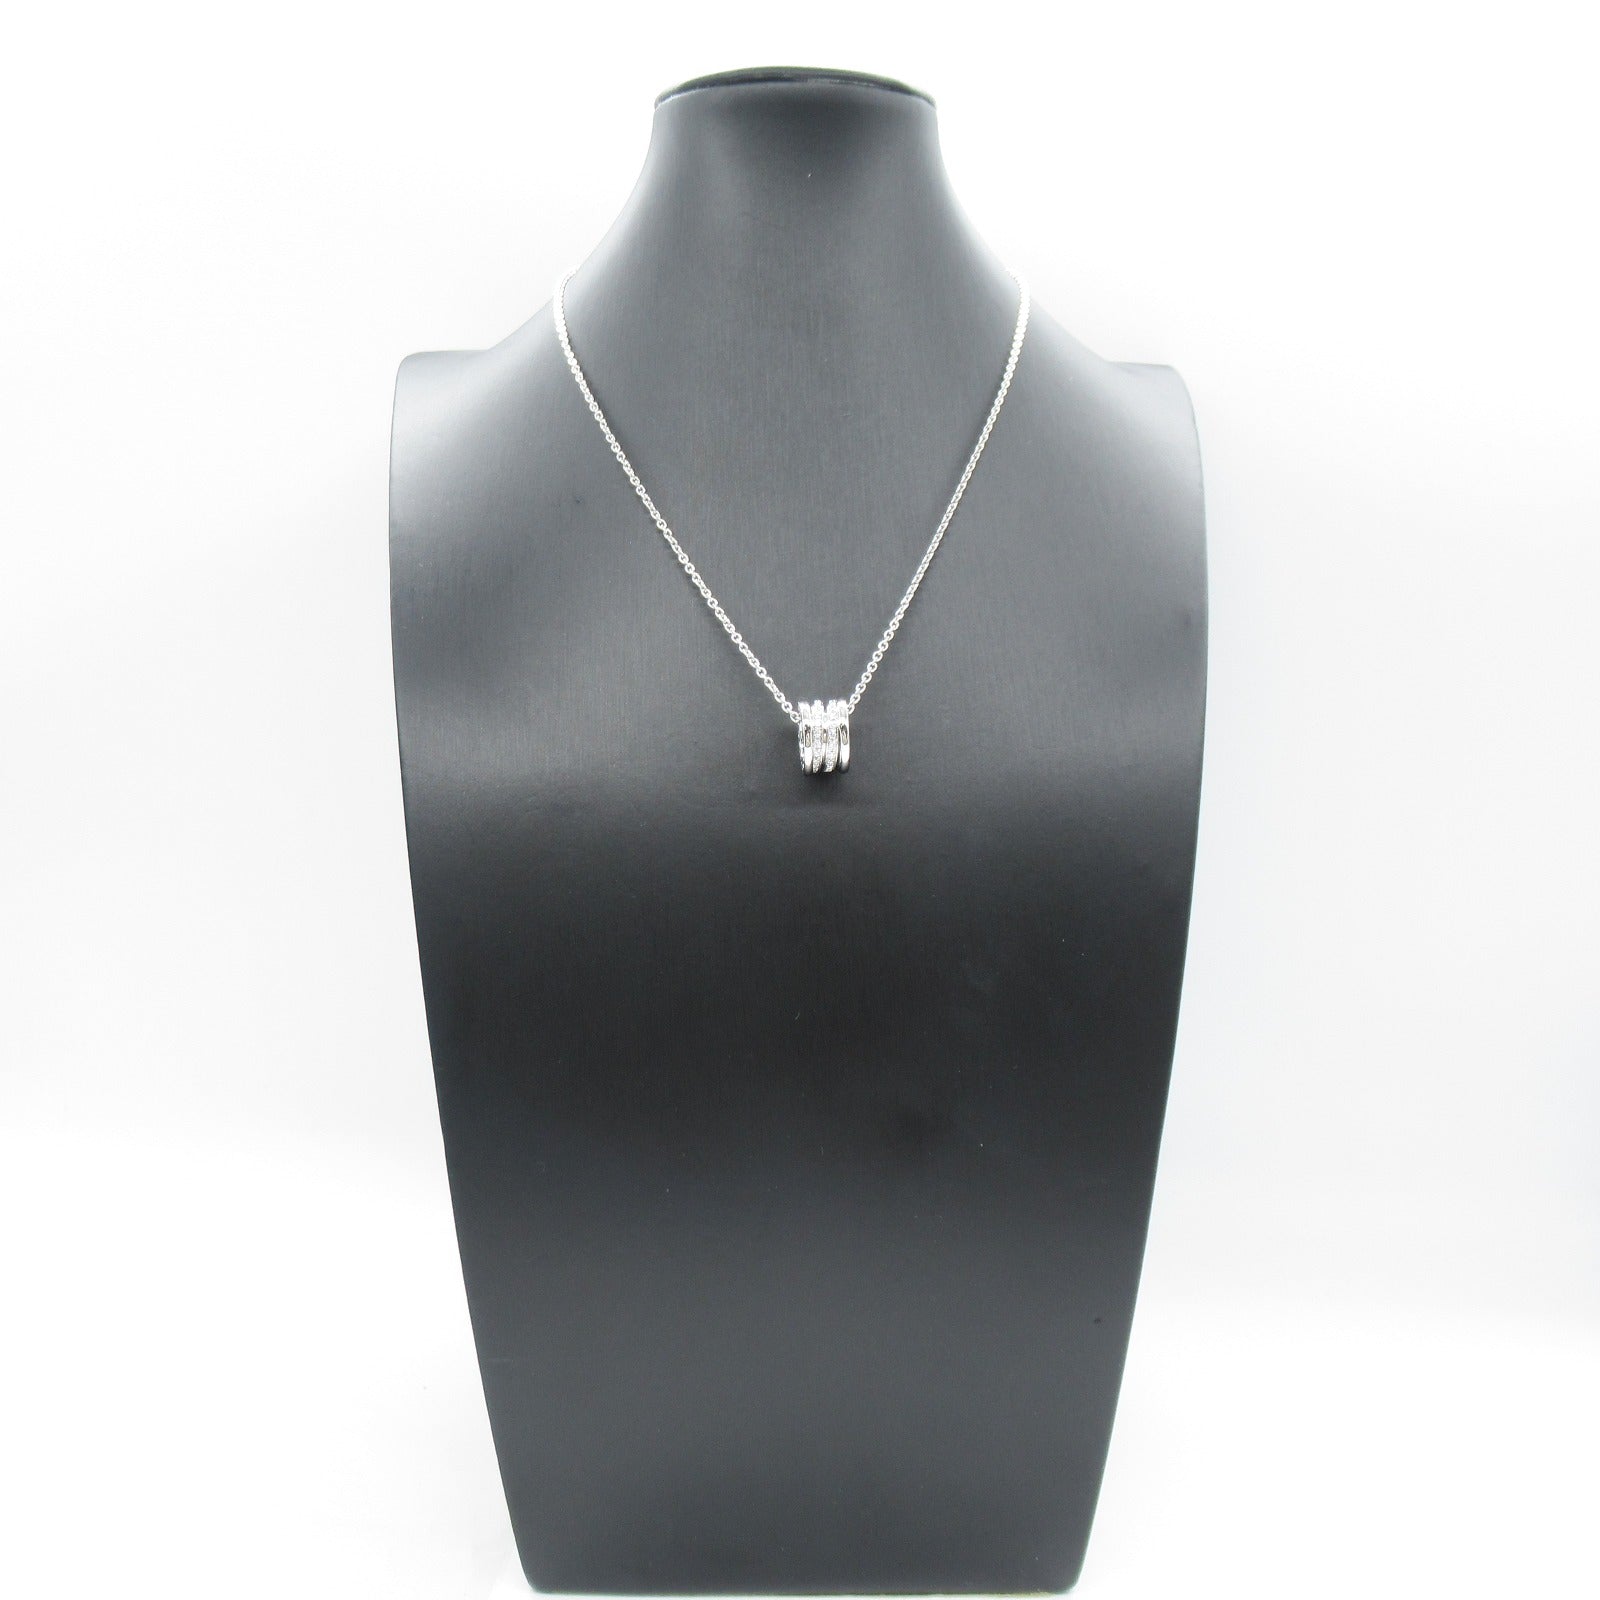 Bulgari BVLGARI B-zero1 Beezero One Diamond Necklace Collar Jewelry K18WG (White G) Diamond  Clearance